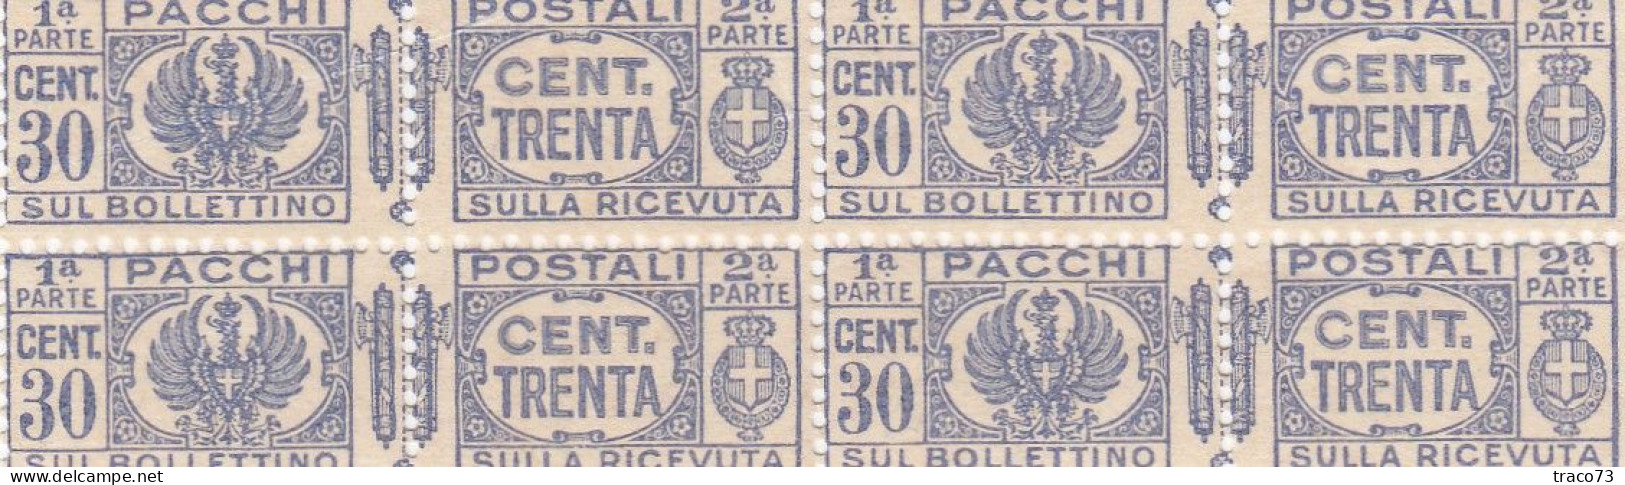 PACCHI POSTALI   /  Cent. 30 X 4 - Paketmarken